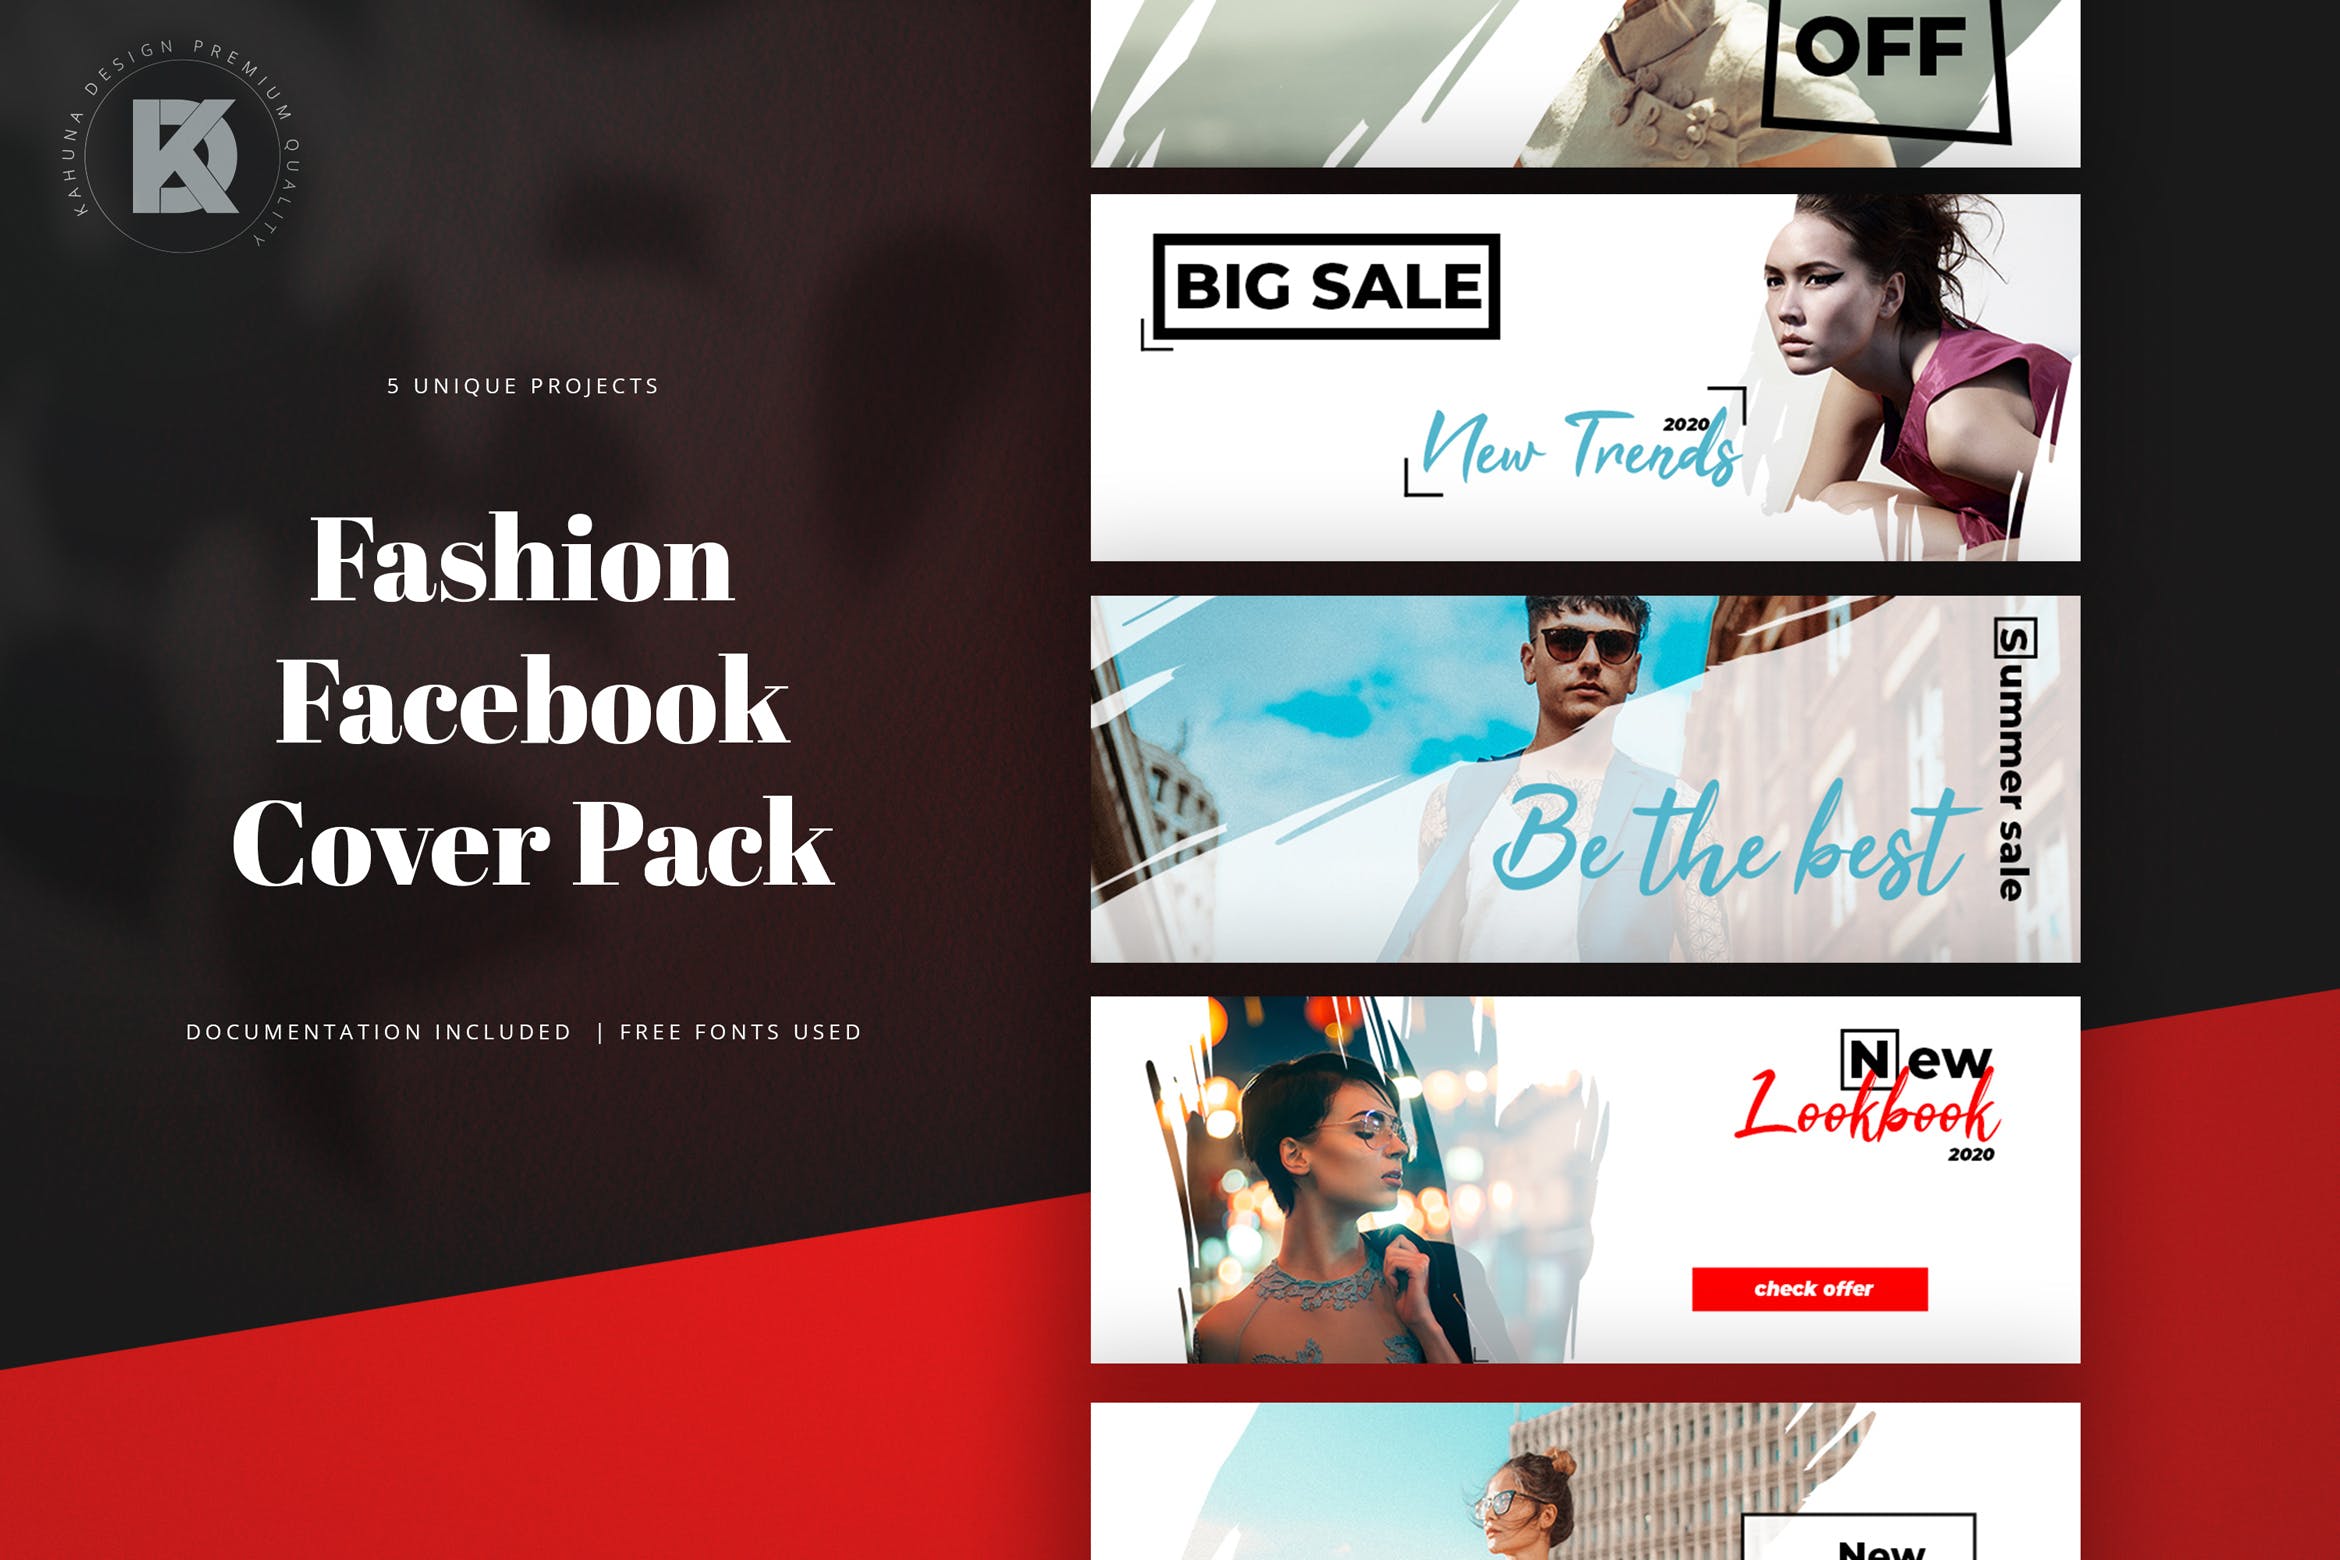 时尚品牌Facebook封面设计模板非凡图库精选 Fashion Facebook Cover Pack插图